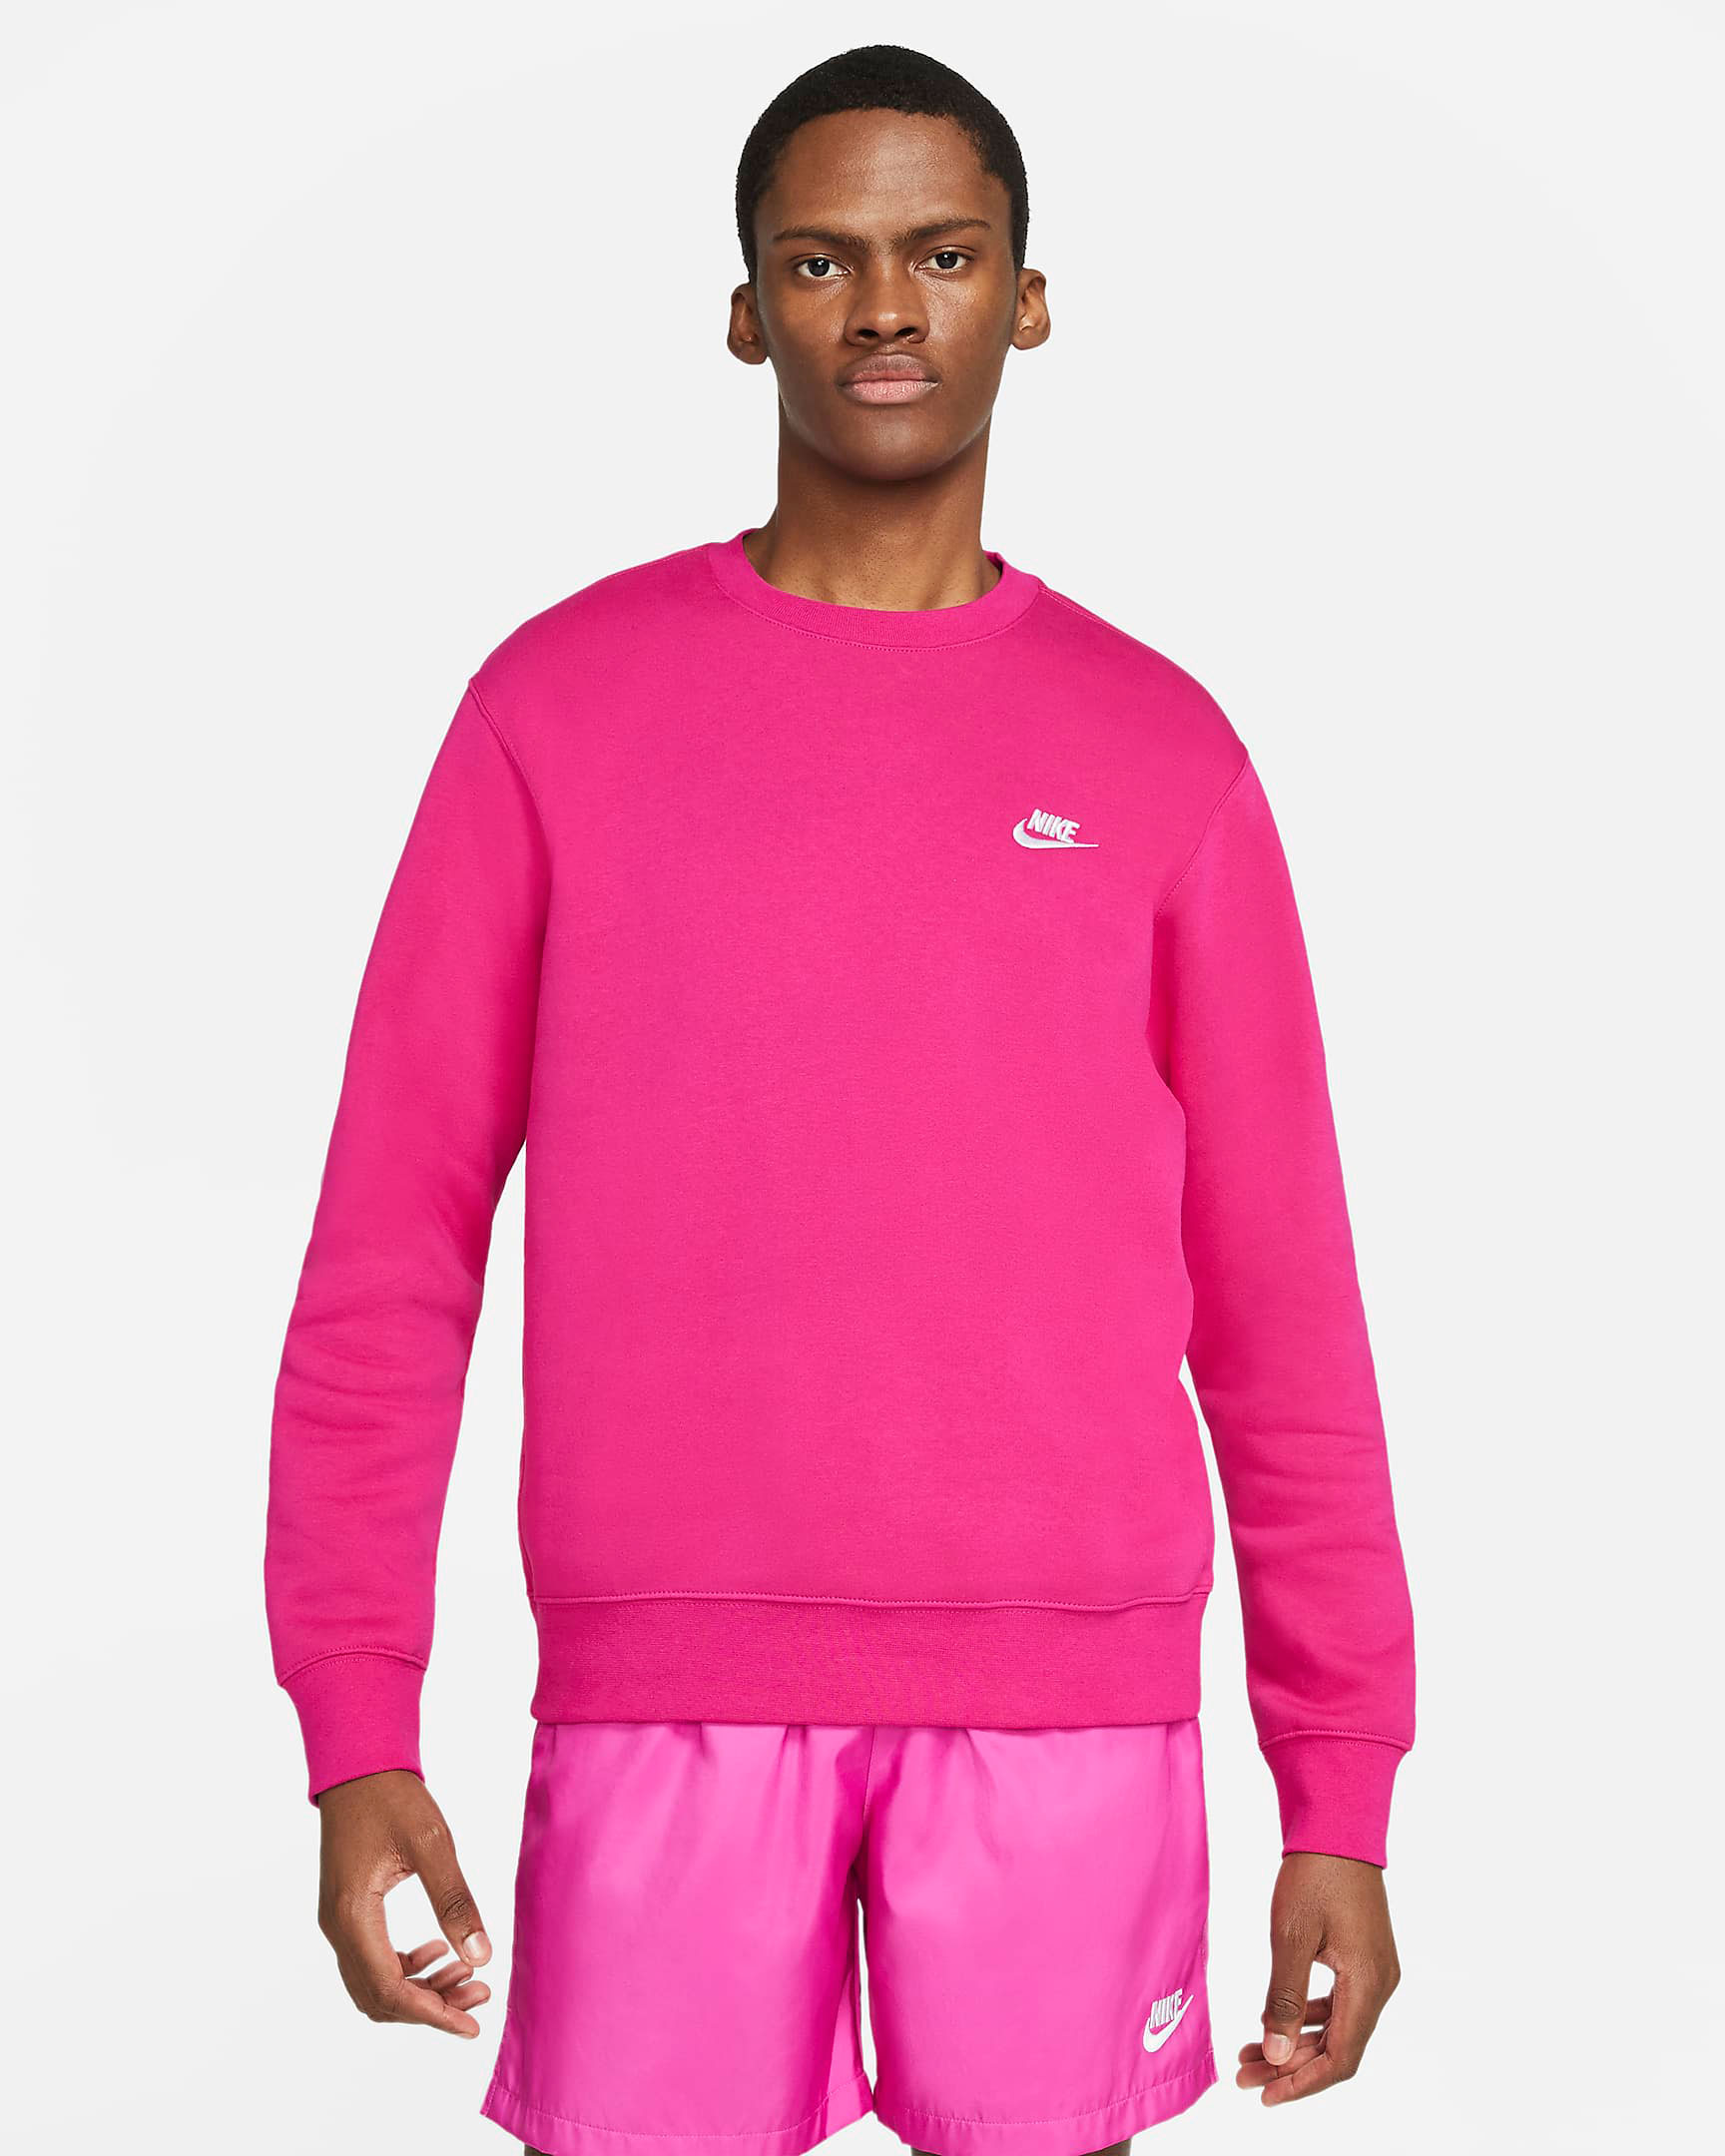 nike-club-fleece-crew-sweatshirt-fireberry-pink